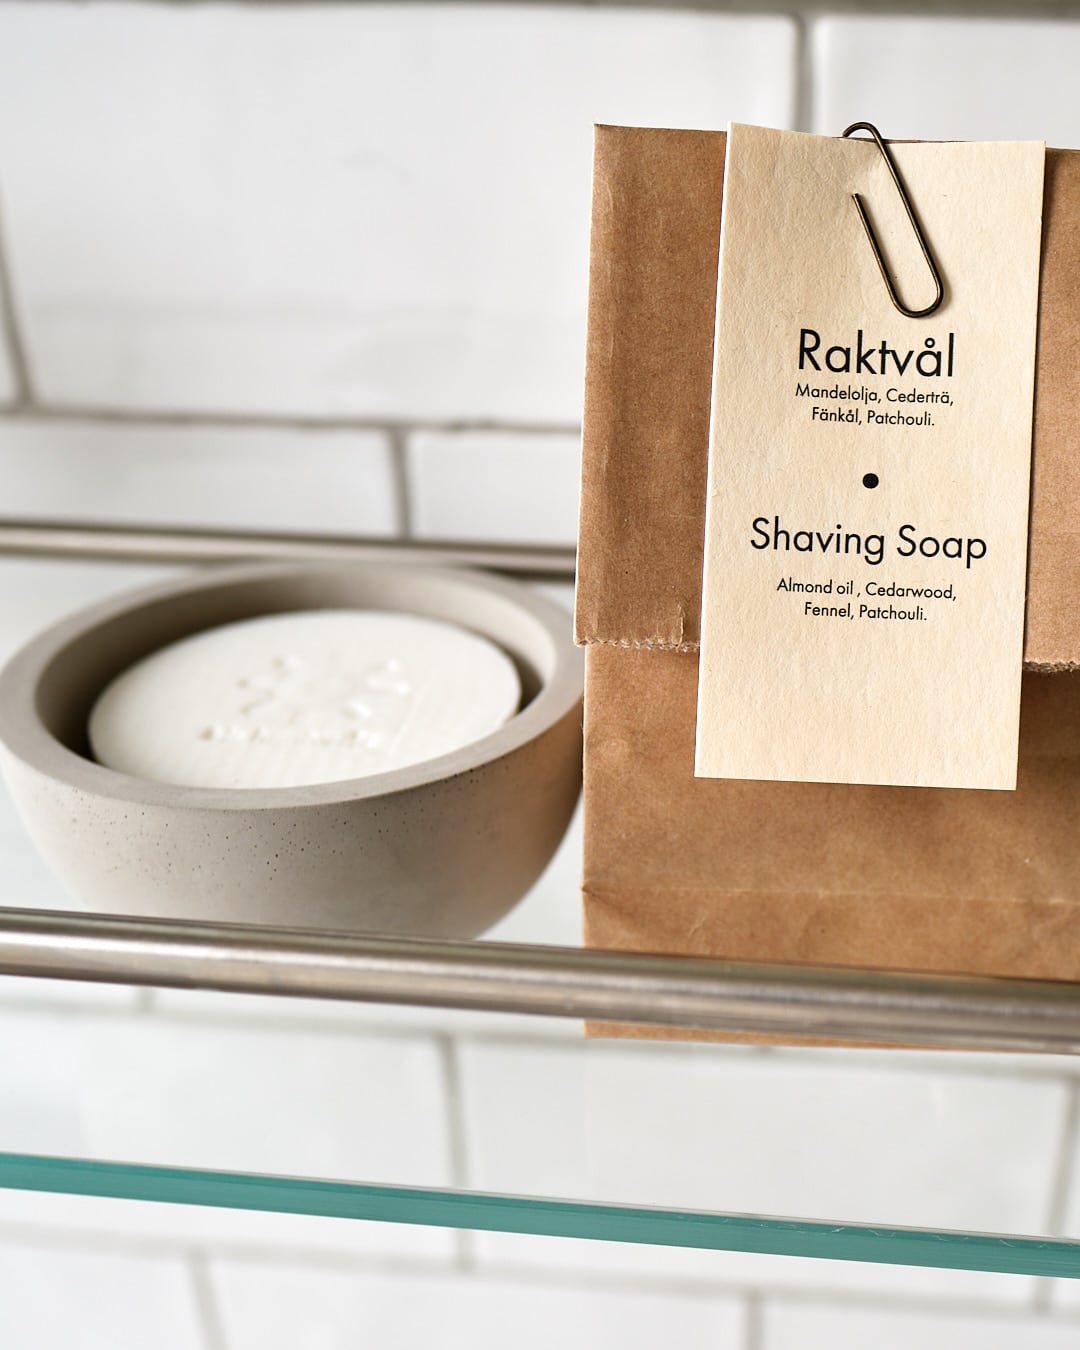 Iris Hantverk shaving soap on a shelf next to a bag.